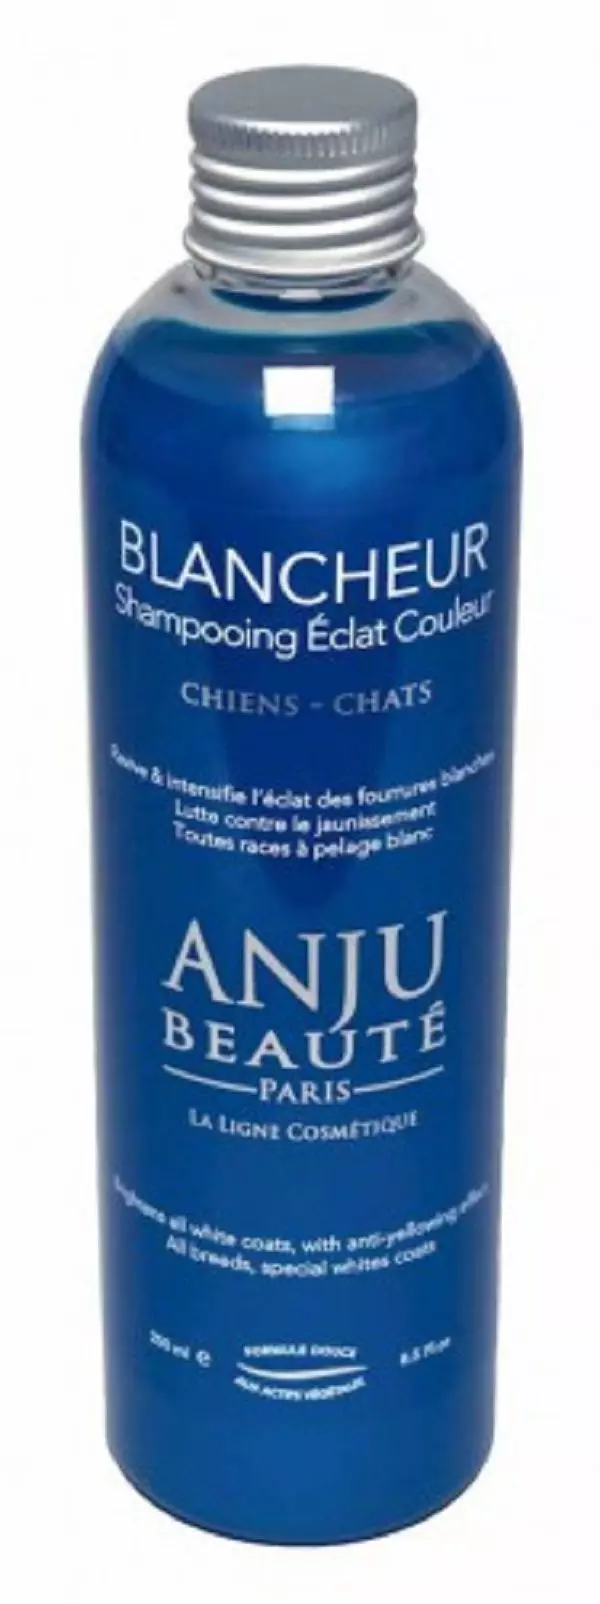 Шампунь для кошек и собак Anju Beaute "Идеальный Белый окрас" (Blancheur Shampooing), 1:5 2,7 кг